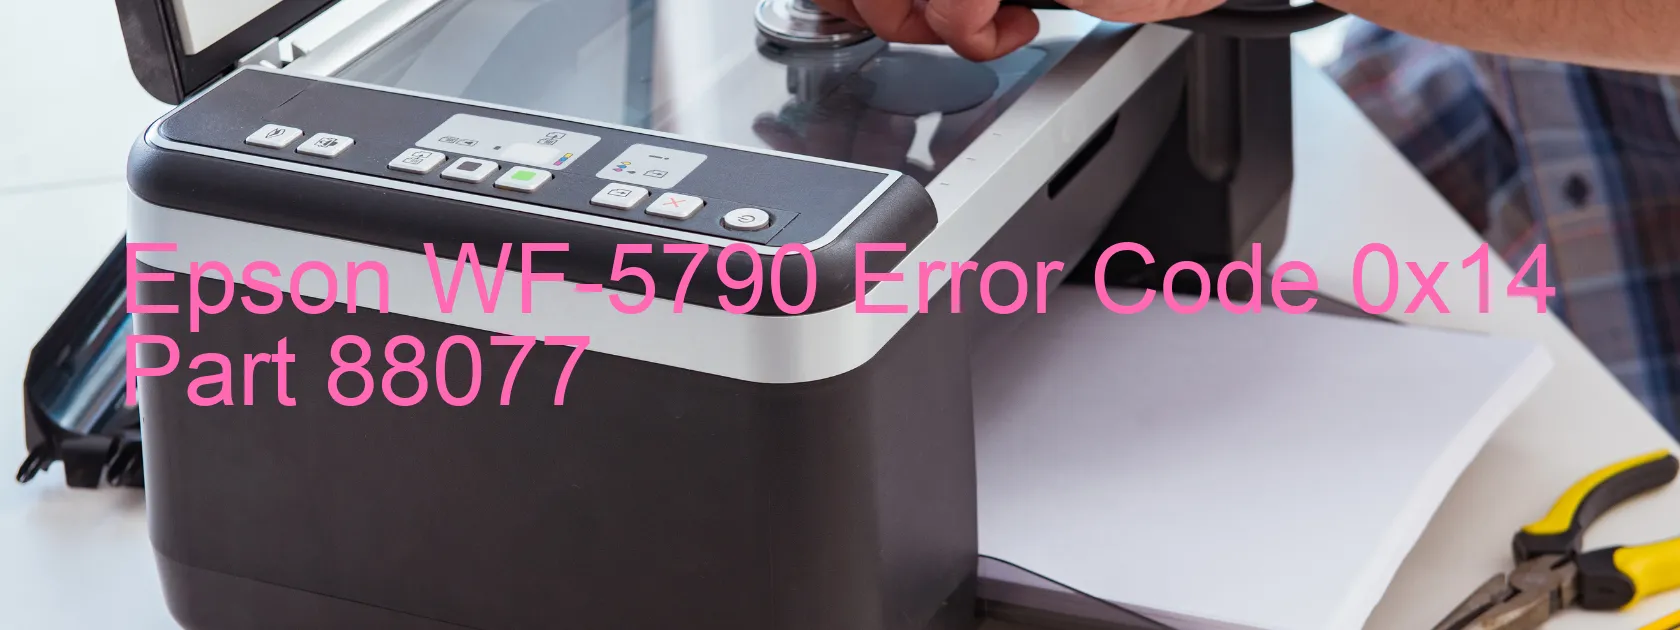 Epson WF-5790 Error Code 0x14 Part 88077